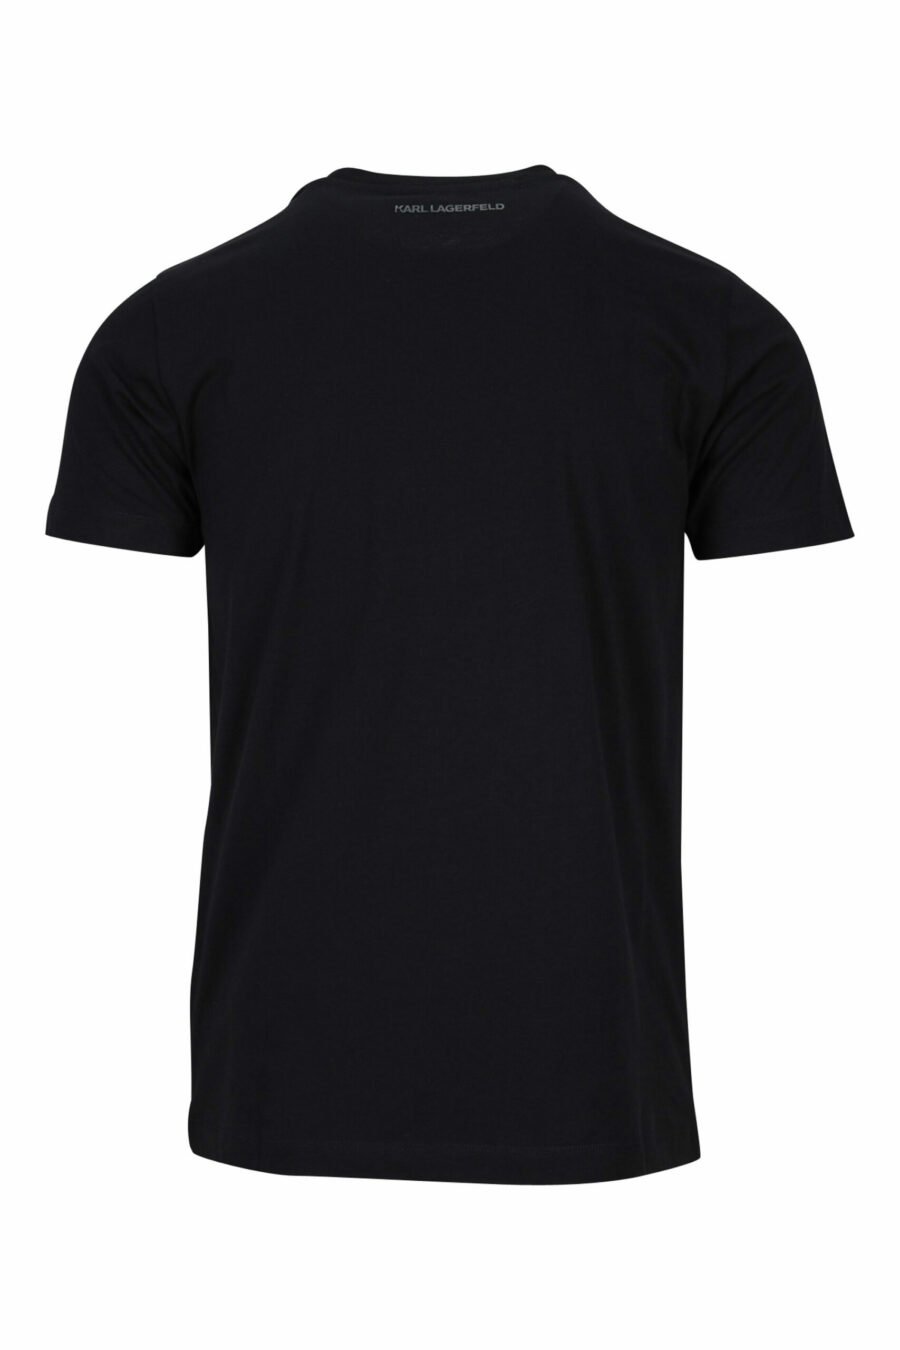 T-shirt noir avec maxilogo en caoutchouc monochrome - 4062226679480 1 scaled